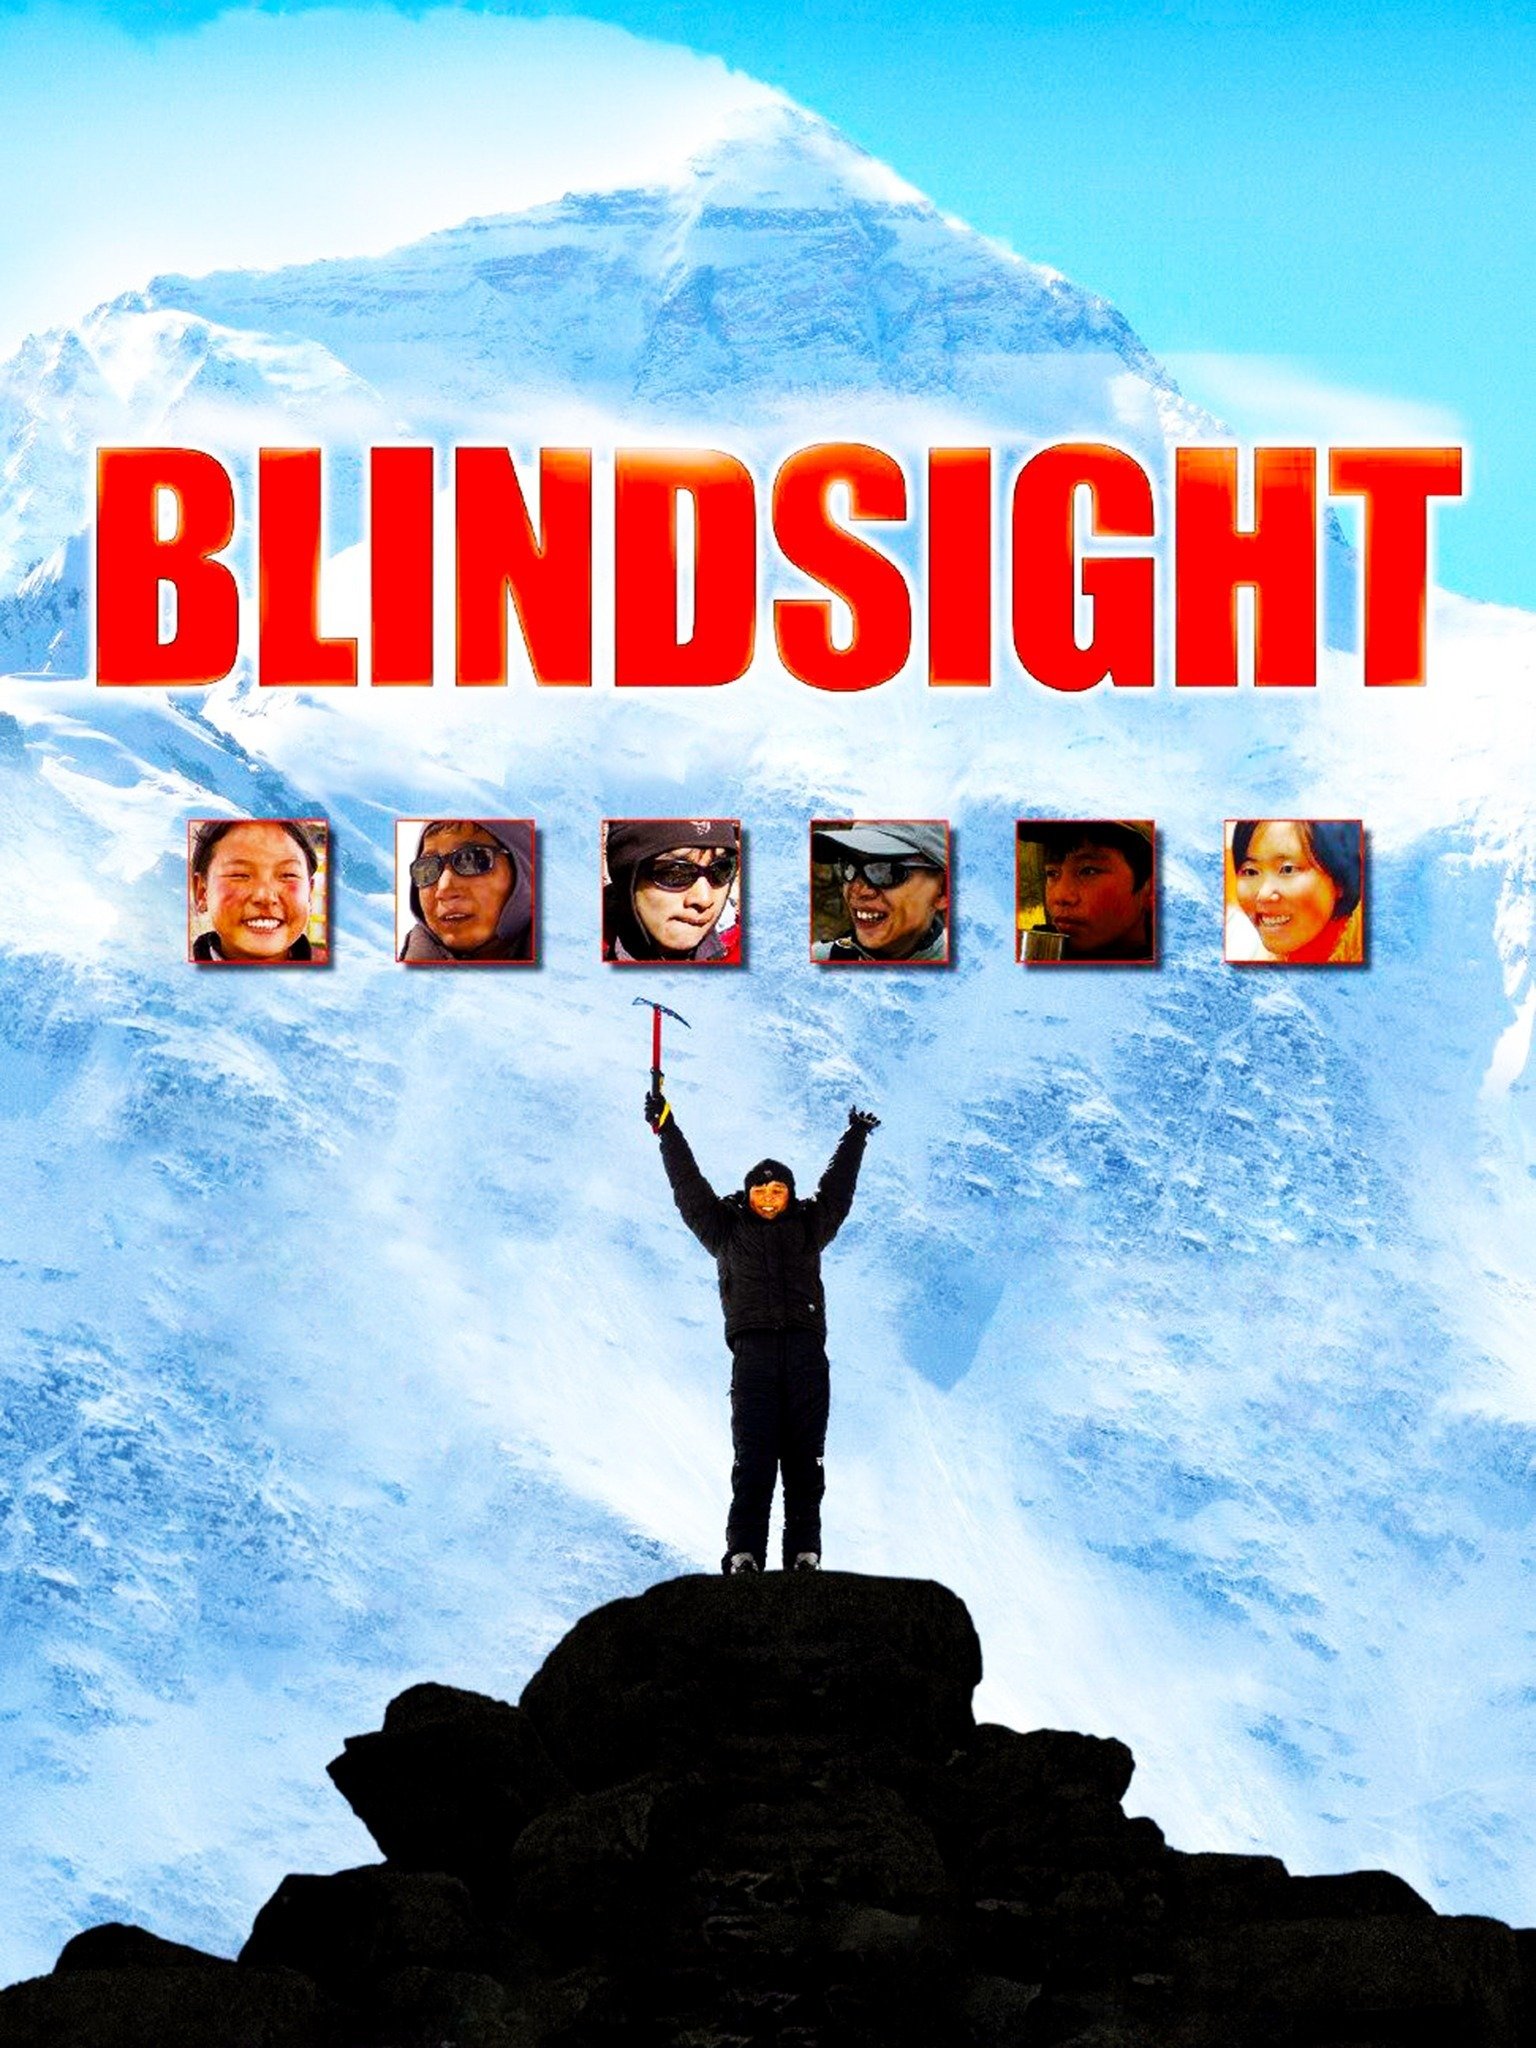 blindsight aliens